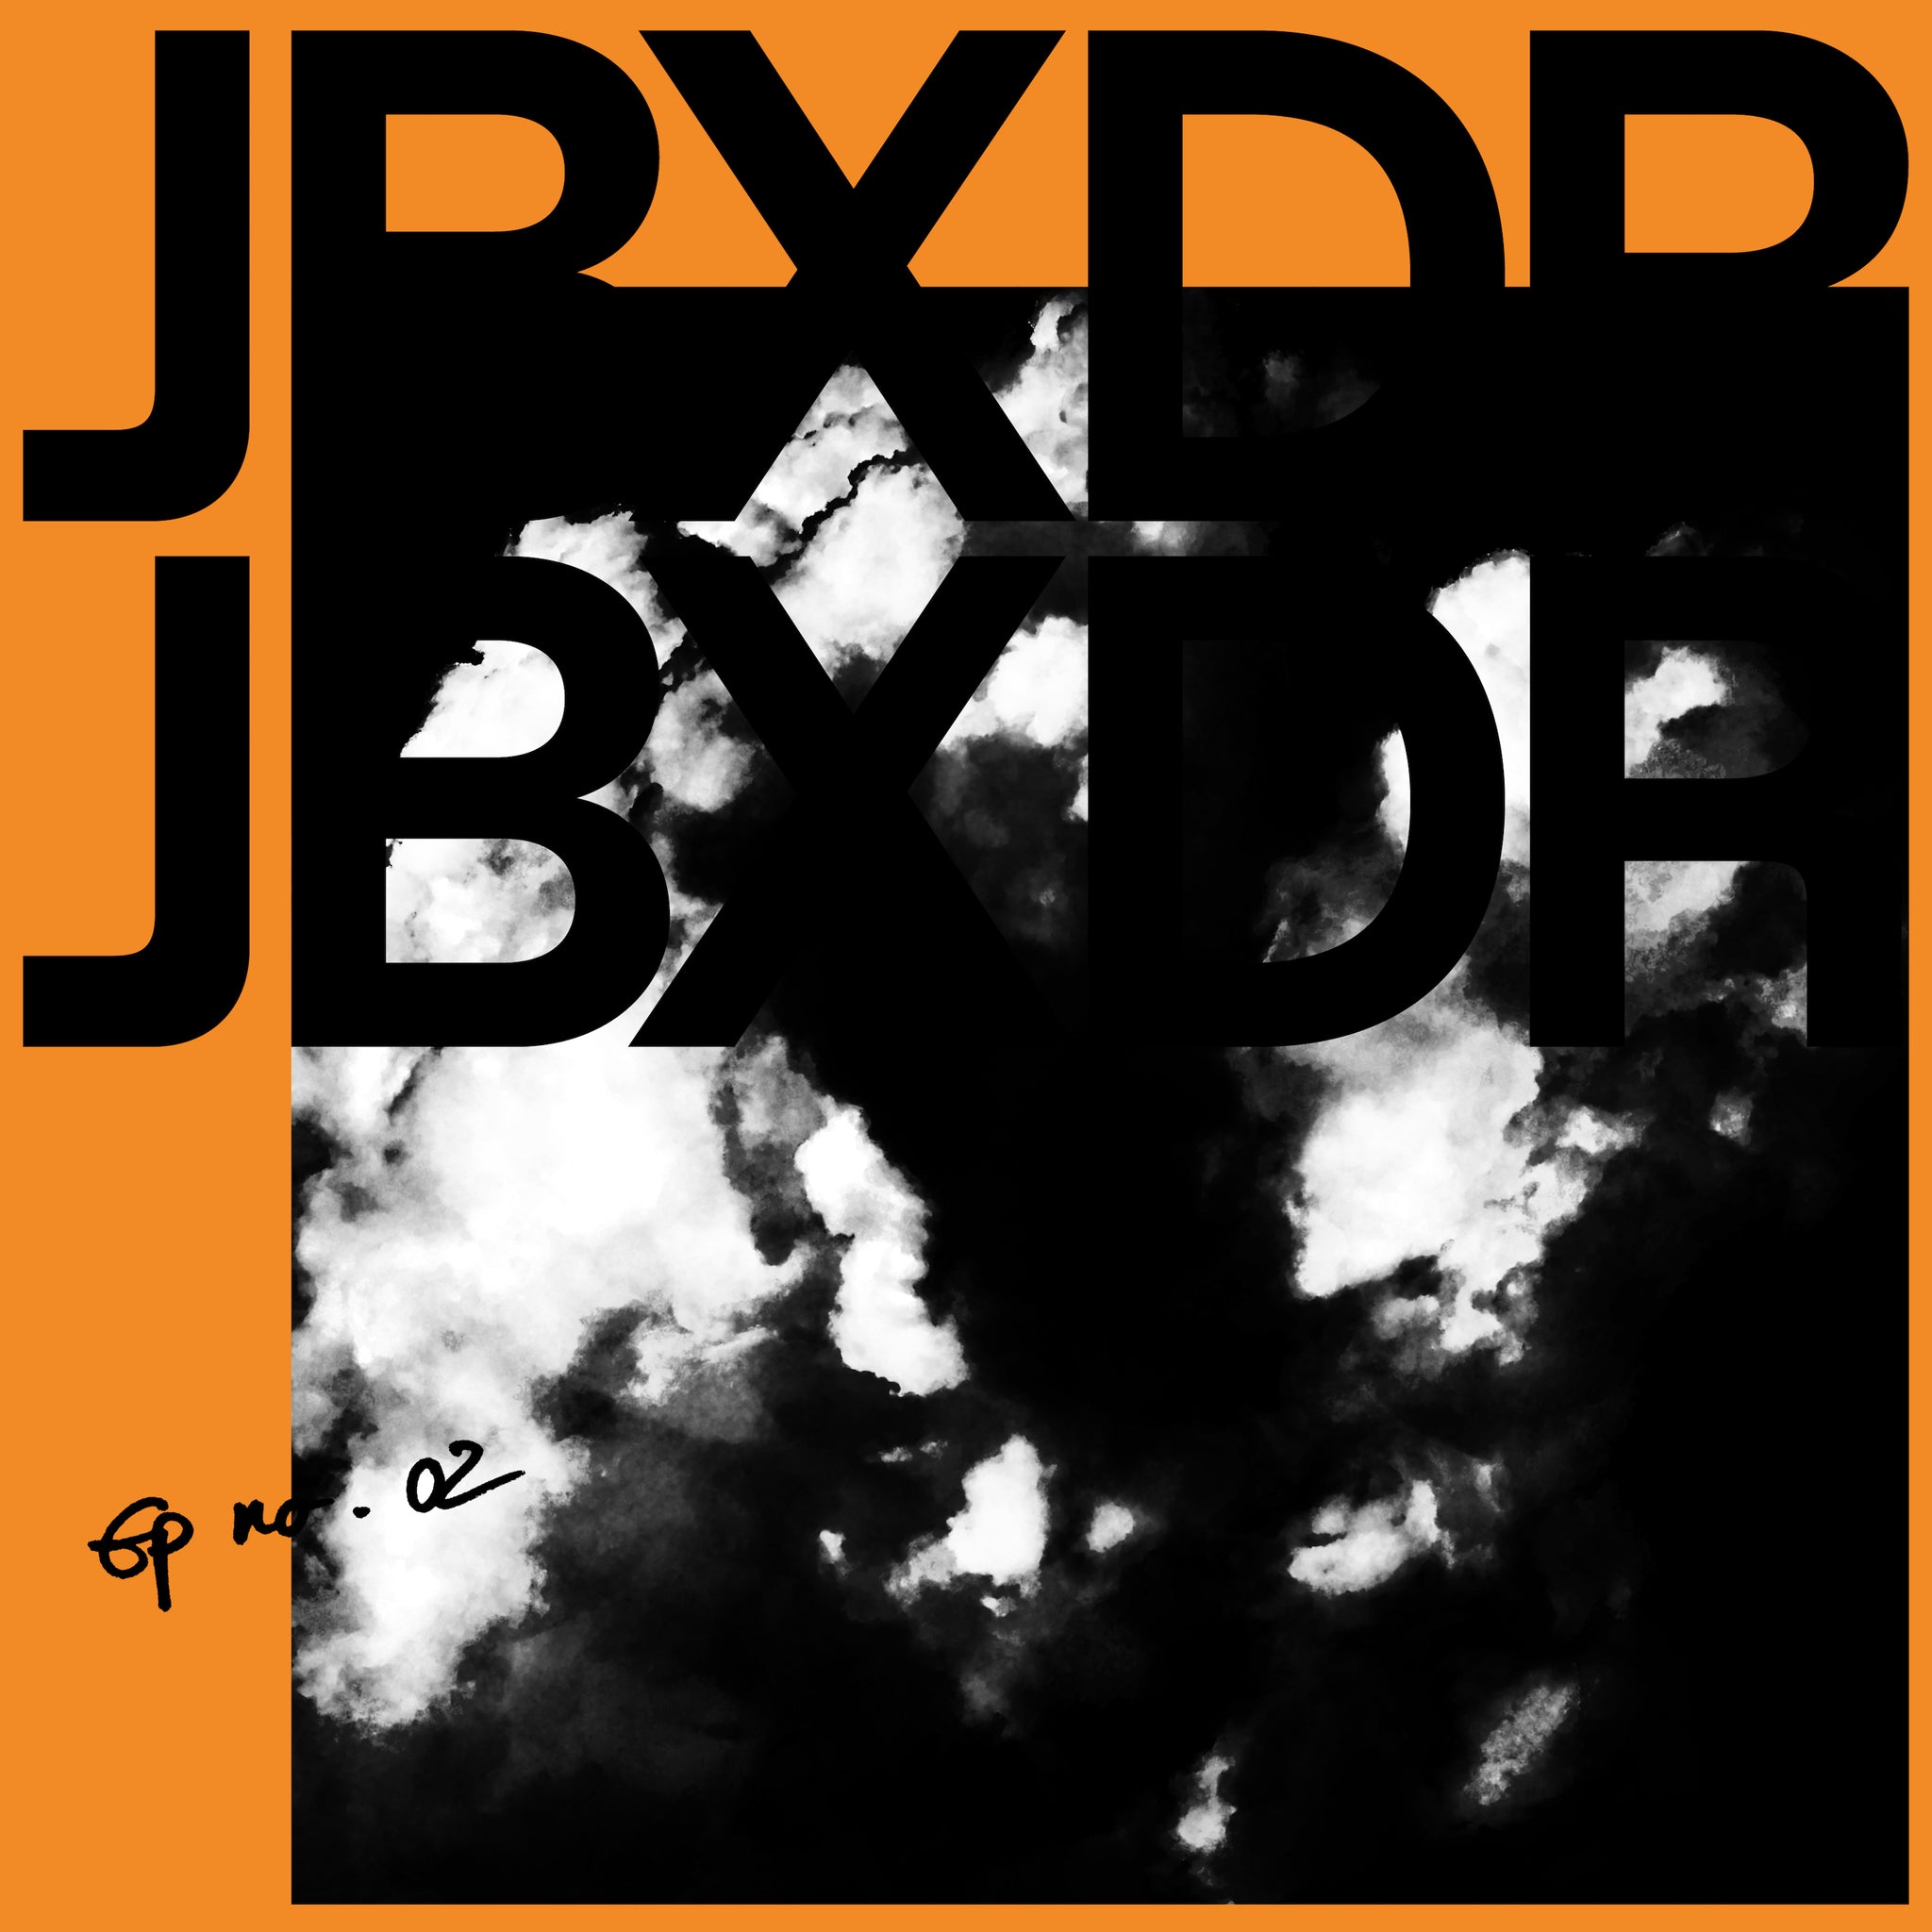 JBXDR - EP No 02 (Digital Download)